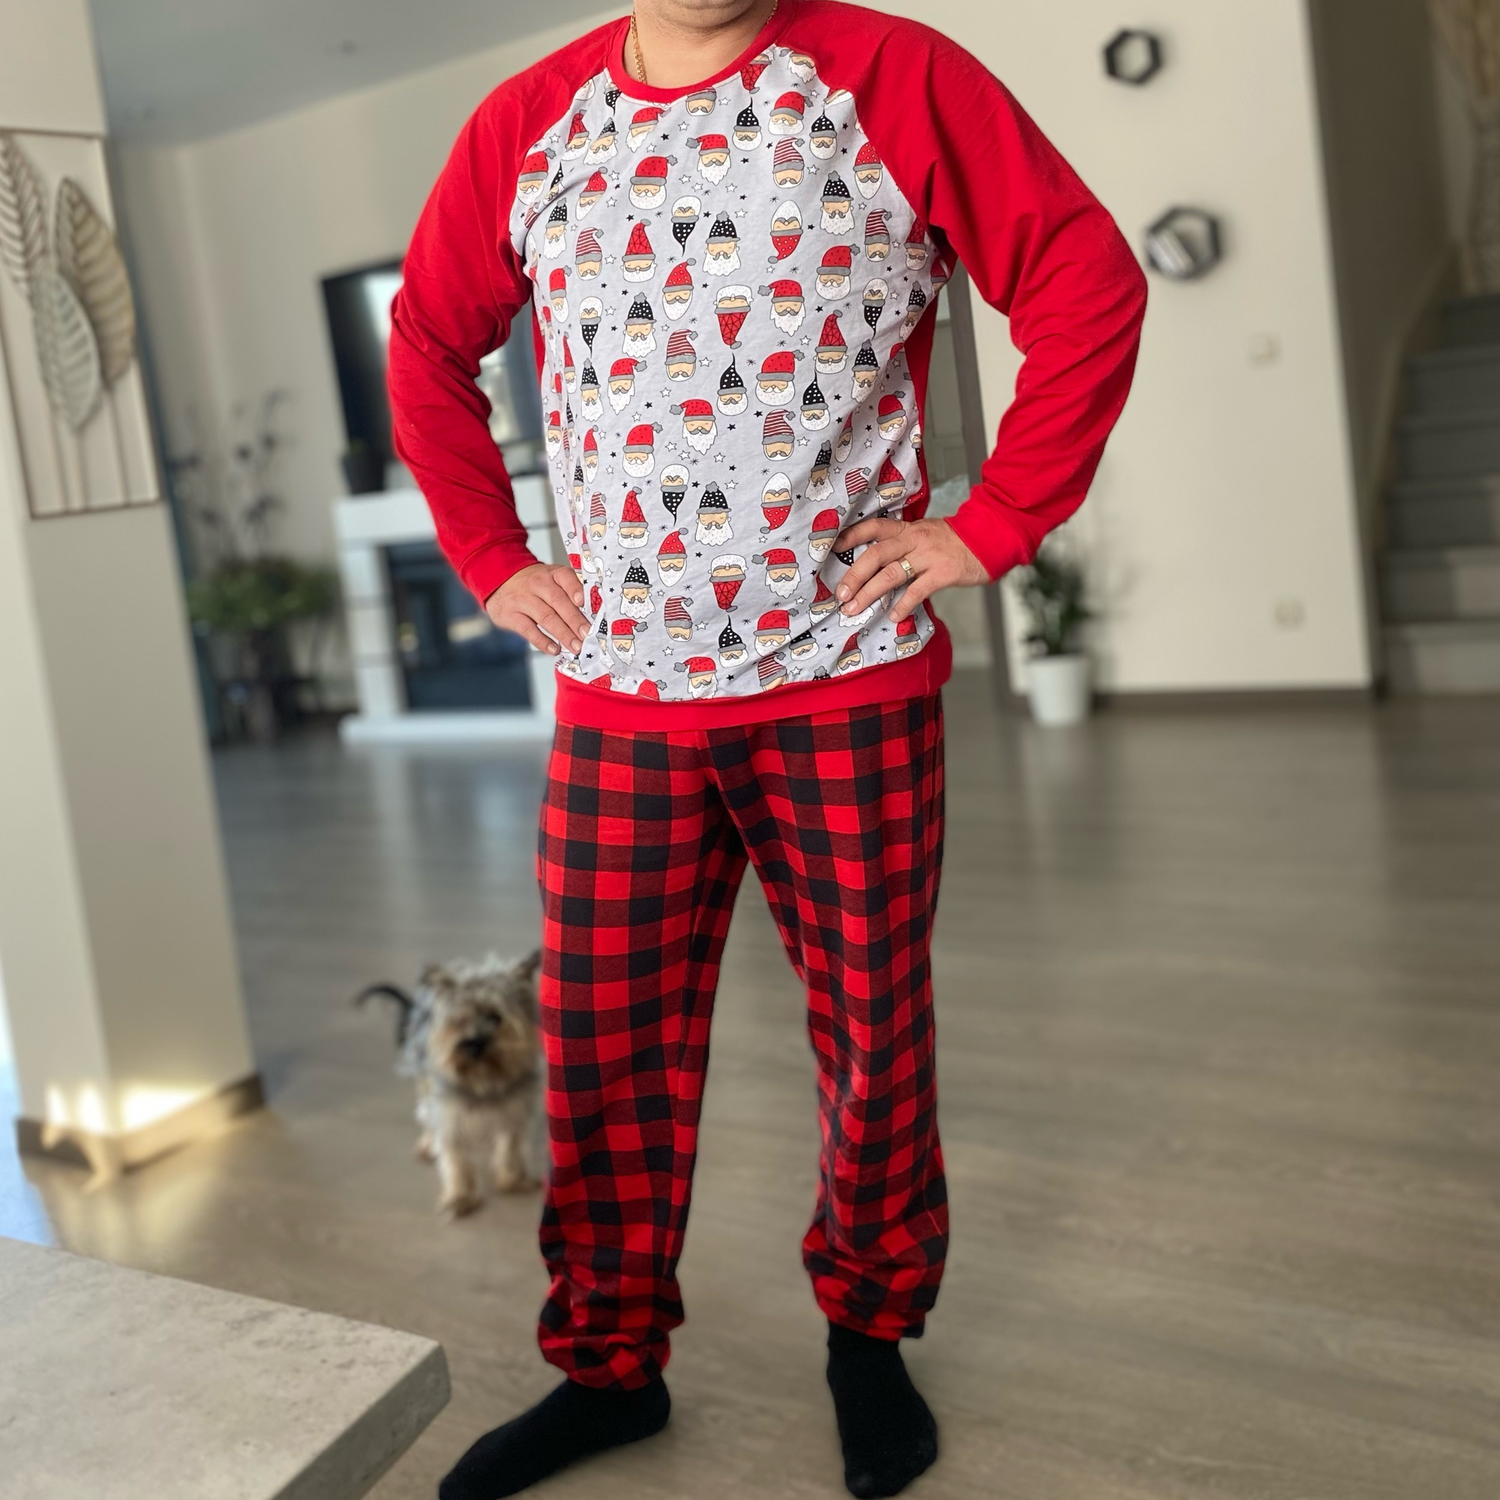 Фото №1 к отзыву покупателя Мила о товаре Family look пижамы в новогоднем стиле